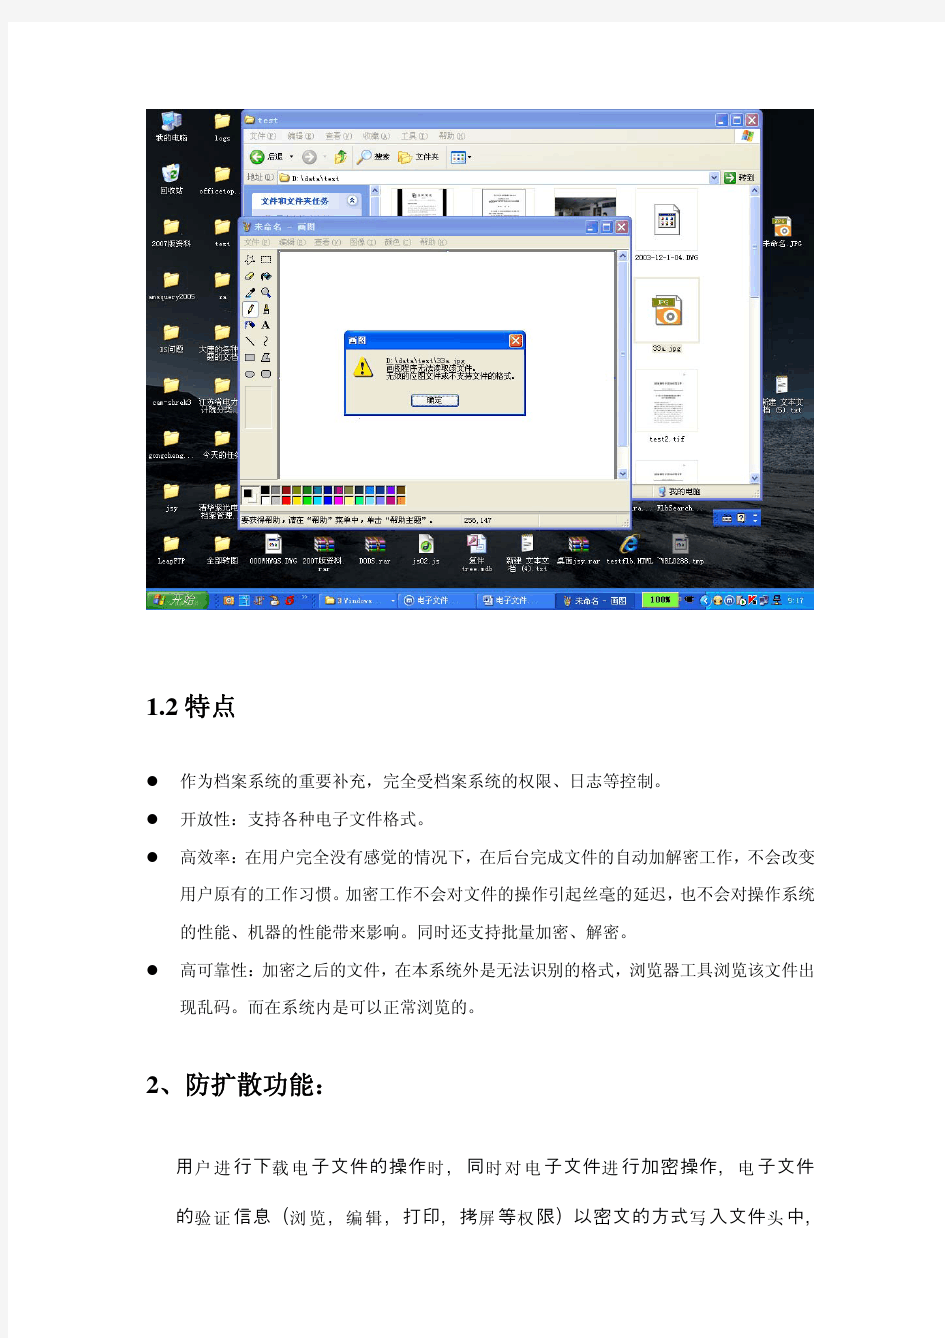 清华紫光电子档案系统技术优势特点